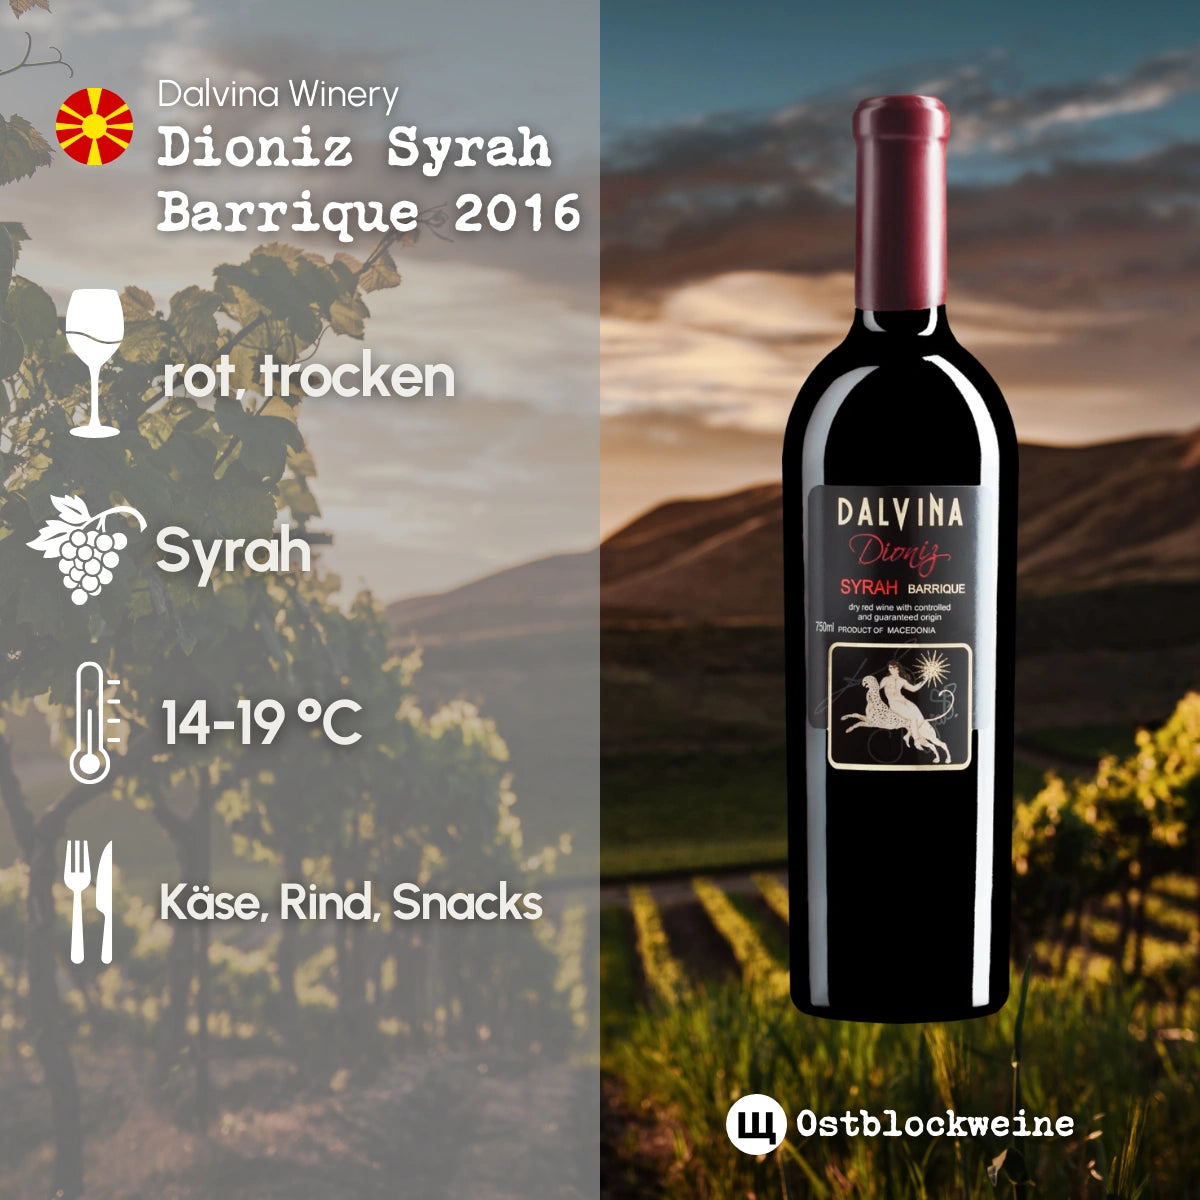 Dioniz Syrah Barrique 2016 - Rotwein trocken aus Nordmazedonien